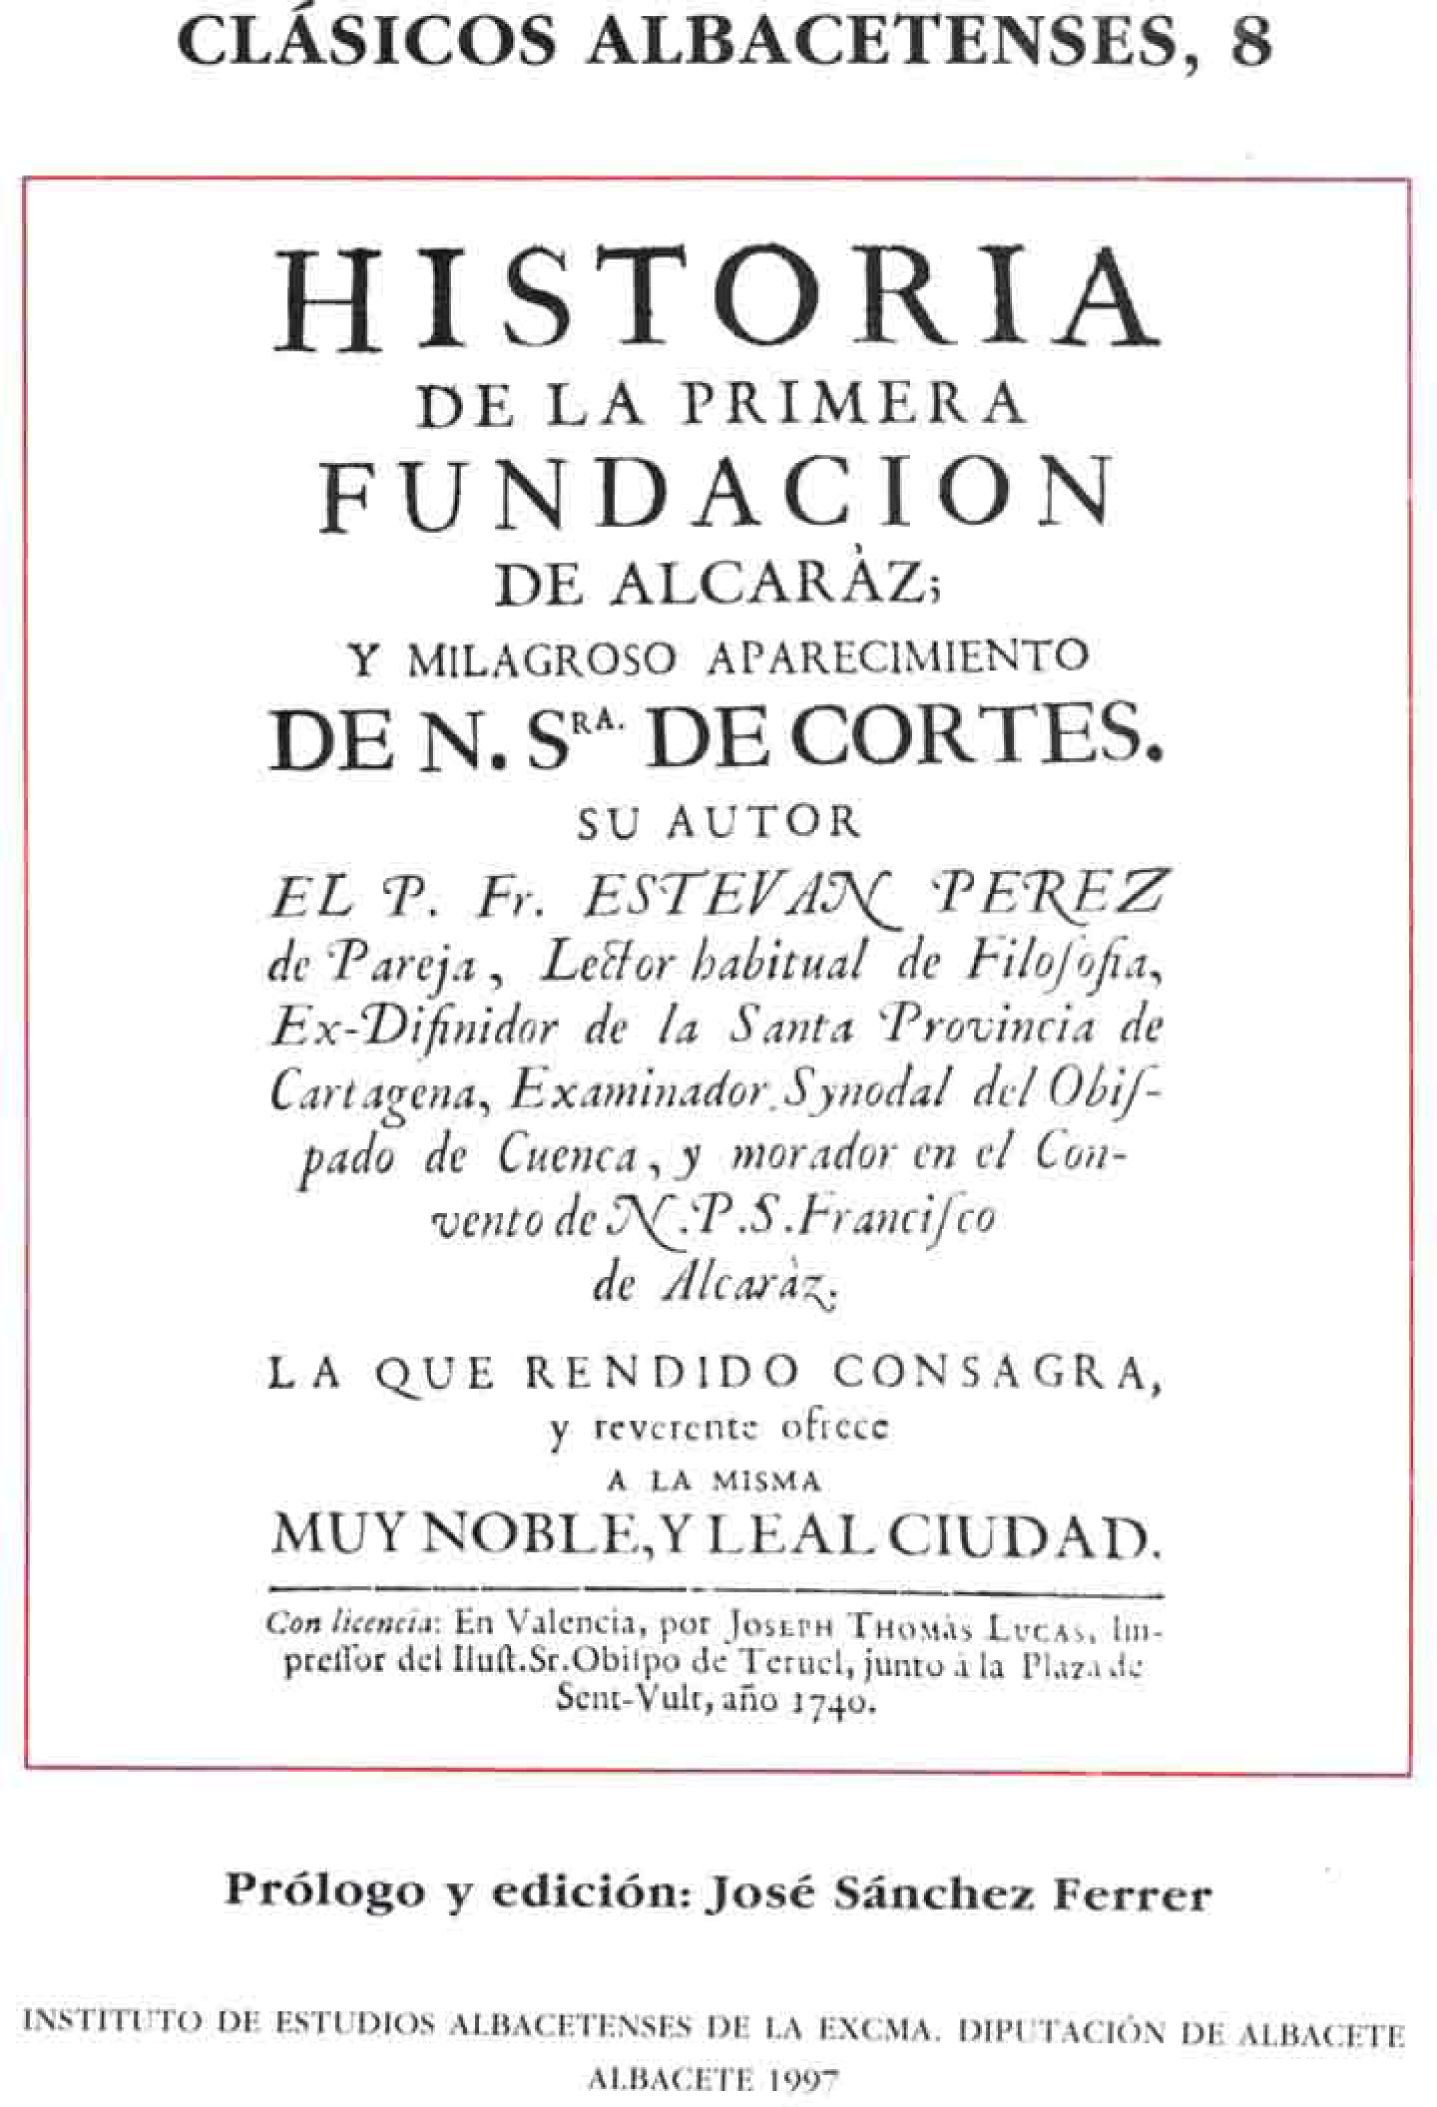 Imagen de portada del libro Historia de la primera fundación de Alcaraz, y milagroso aparecimiento de Nuestra Señora de Cortes